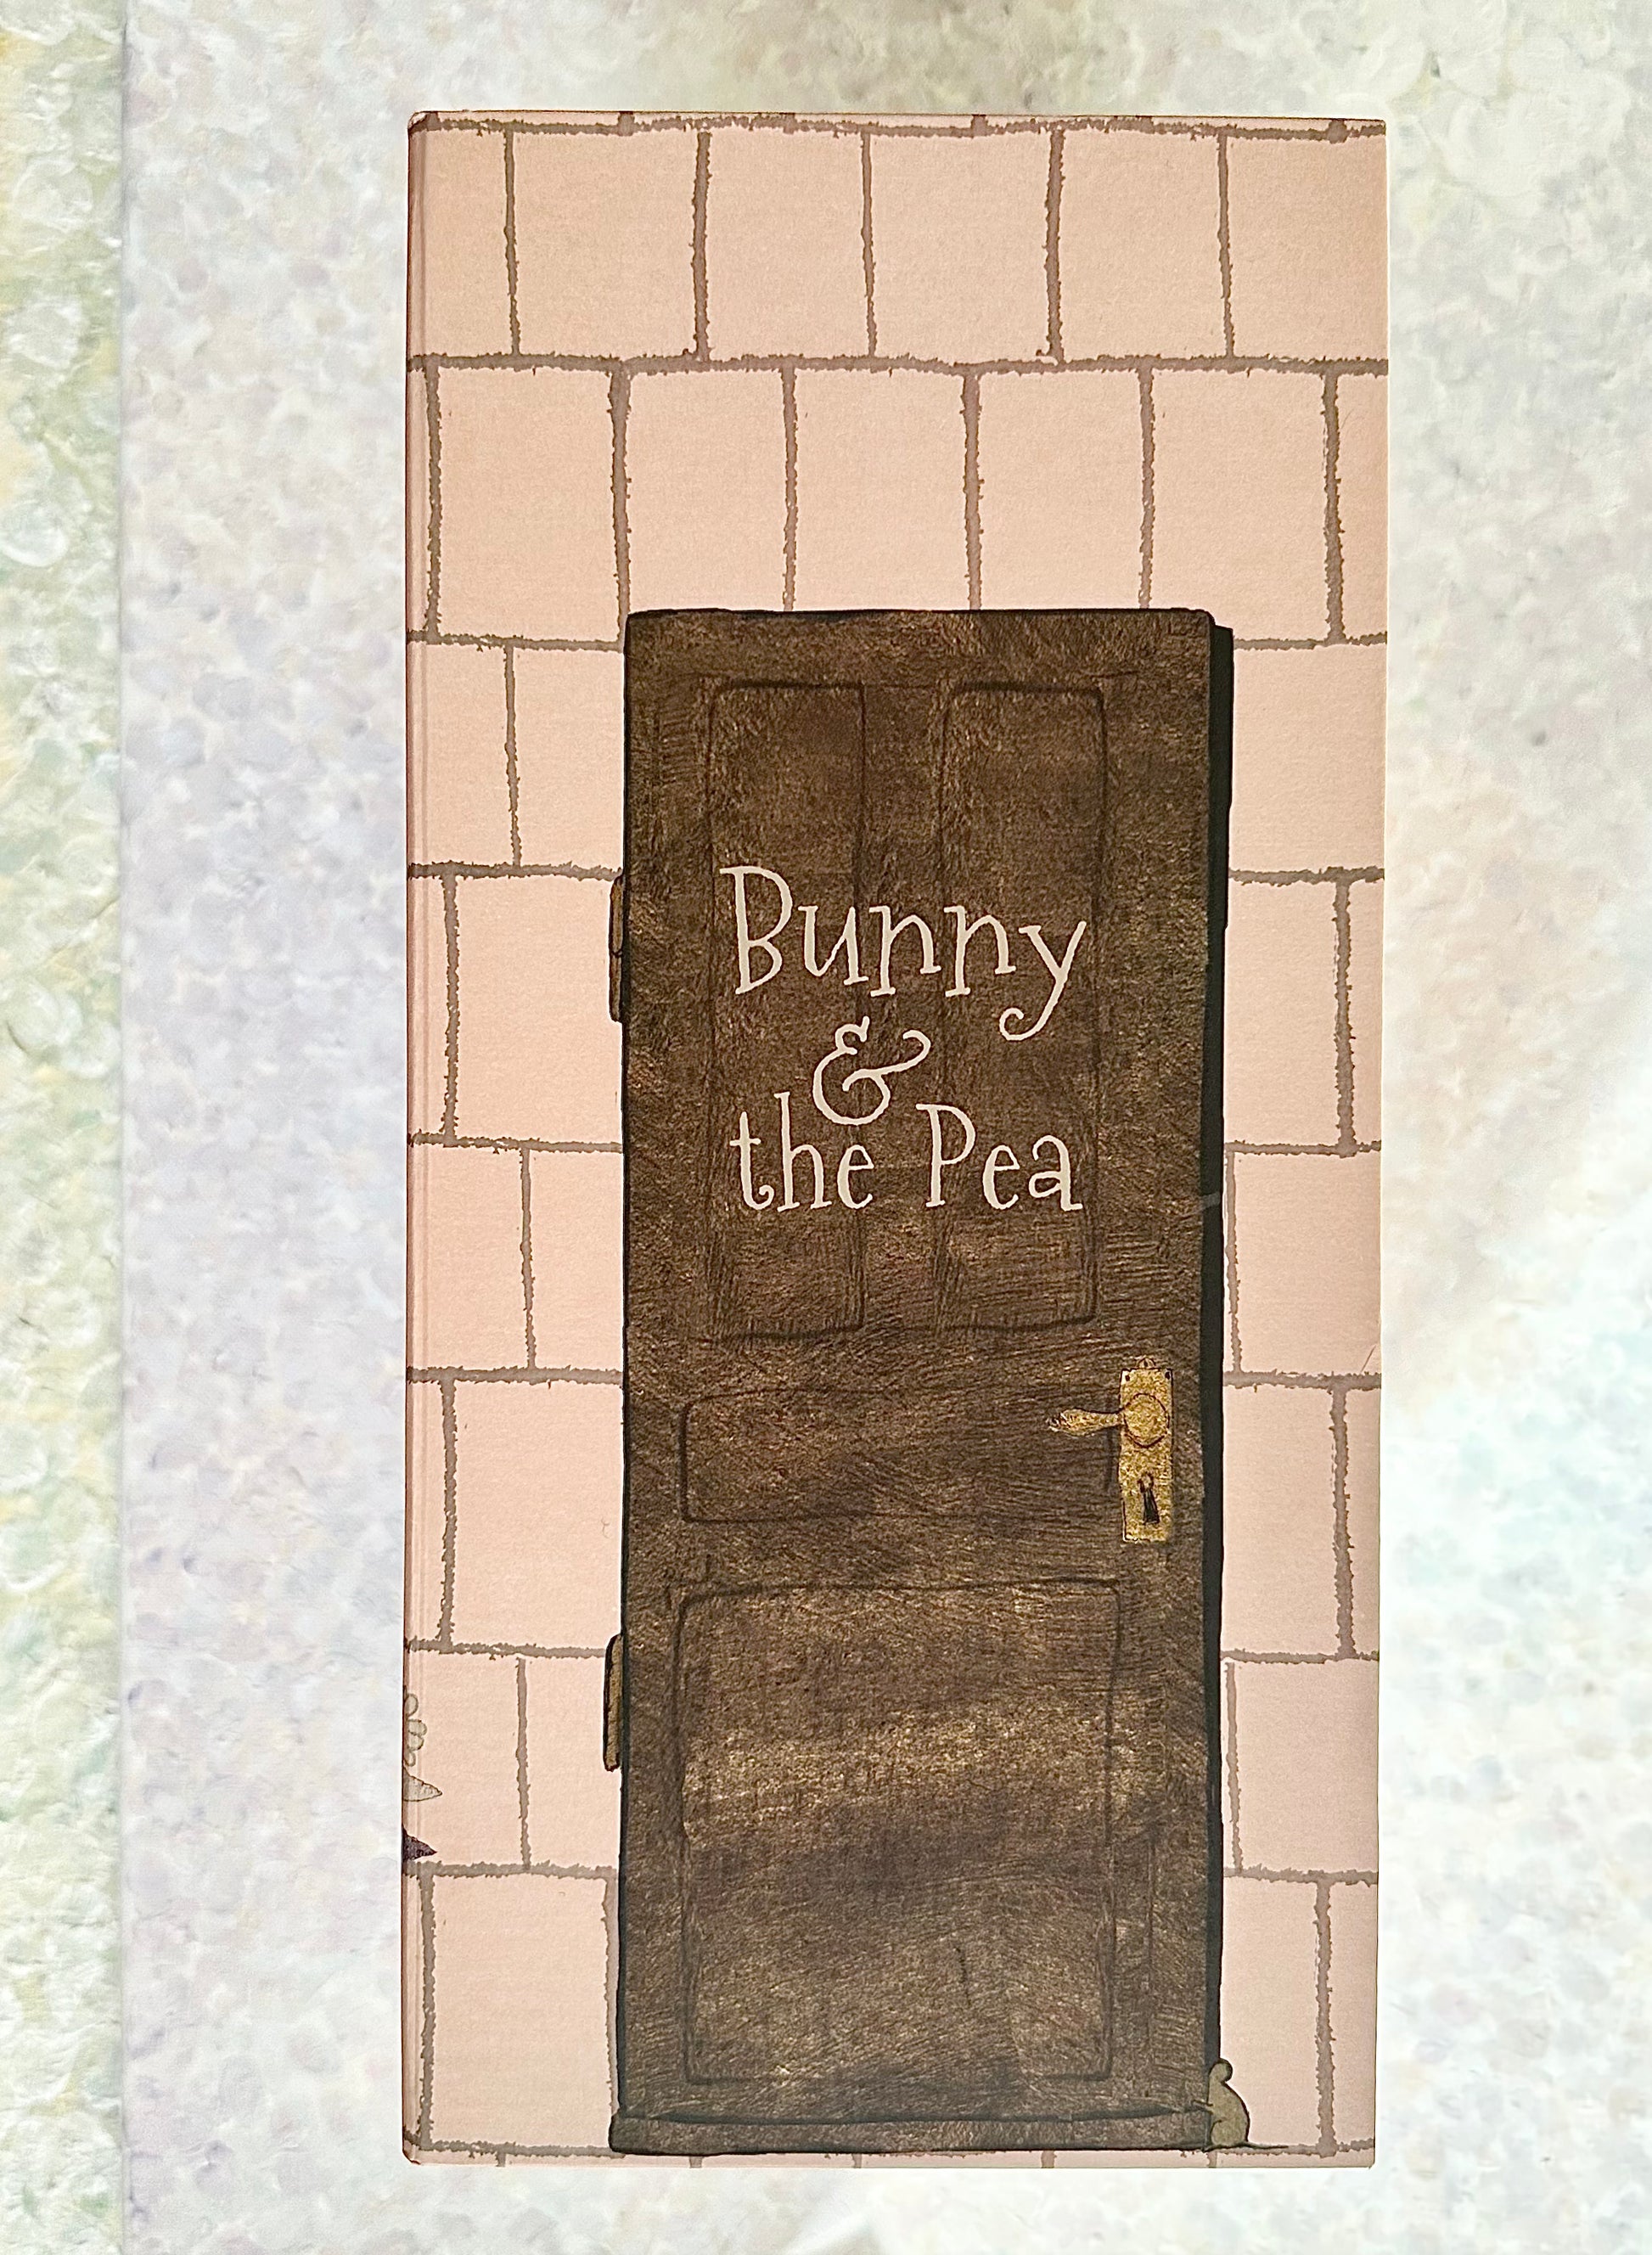 Mini Bunny & the Pea - 2013